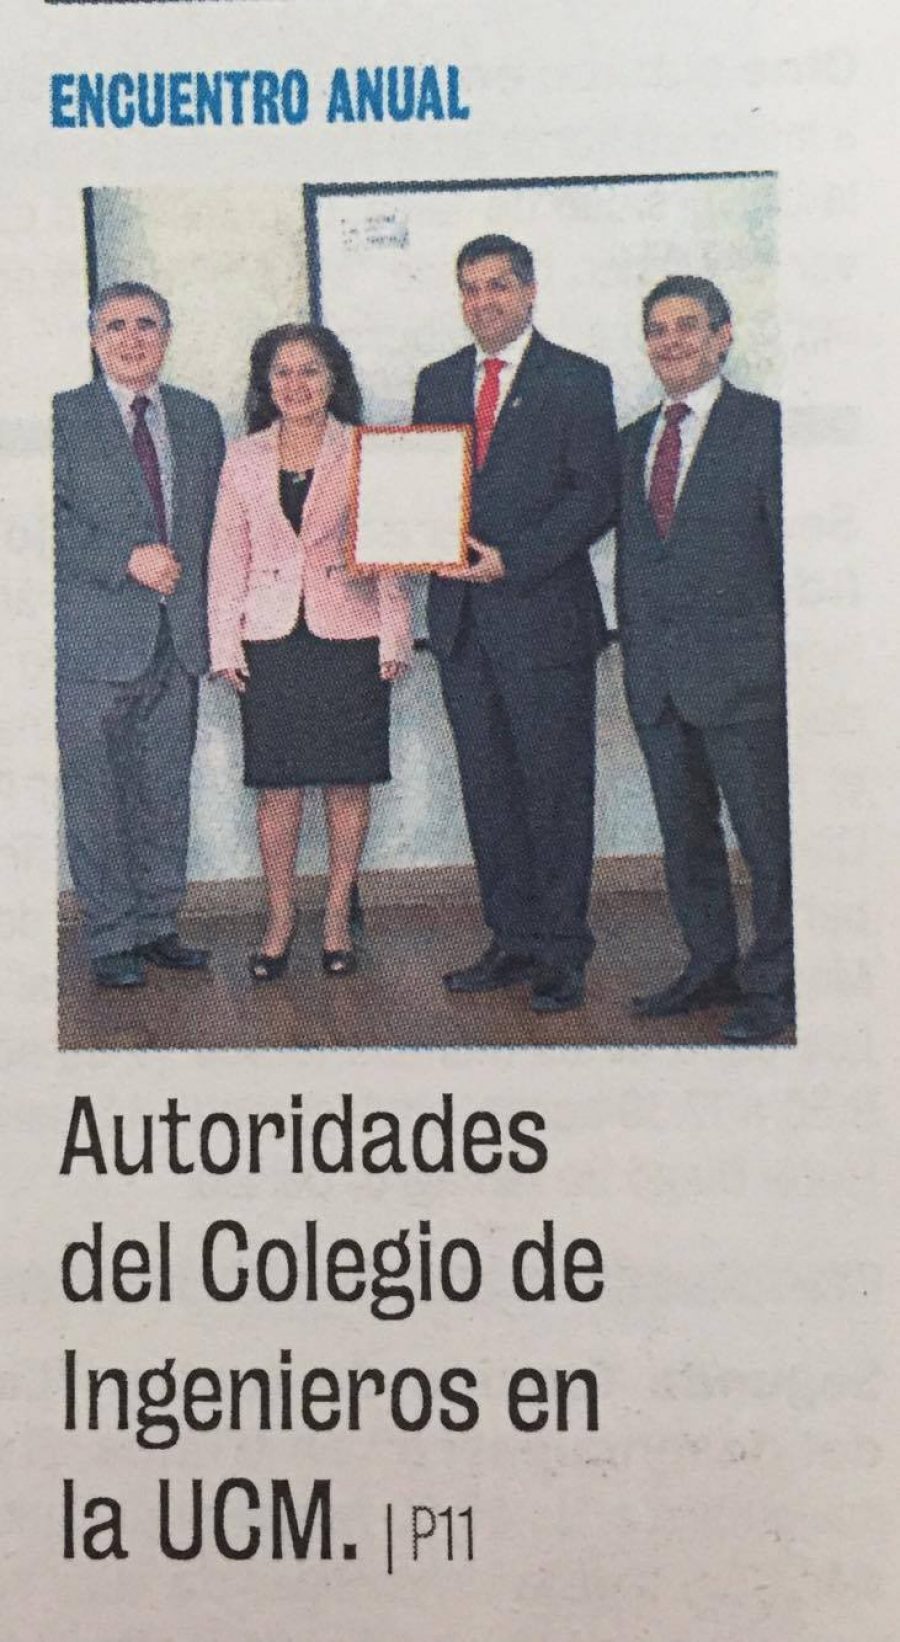 15 de noviembre en Diario La Prensa: “Autoridades del Colegio de Ingenieros en la UCM”